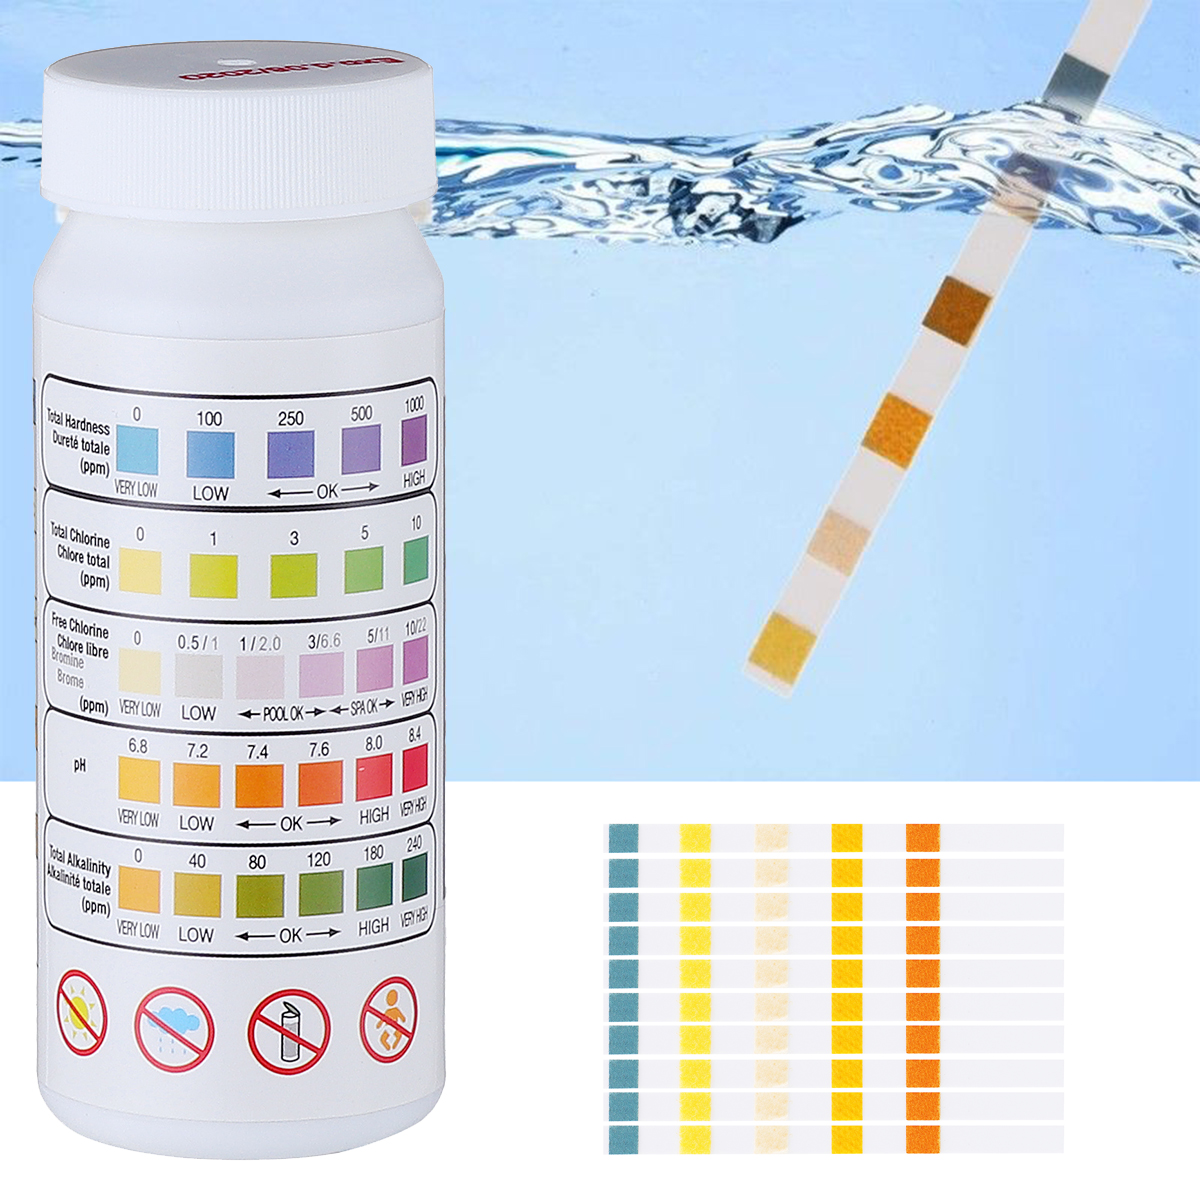 Тест полоски для определения вод. PH Tester для бассейна полоски. Индикаторные полоски хлора, 0-20 мг/л (ppm), 100 полосок/упаковка. Измеритель для бассейна PH/хлор. Тест полоски РН воды норма.